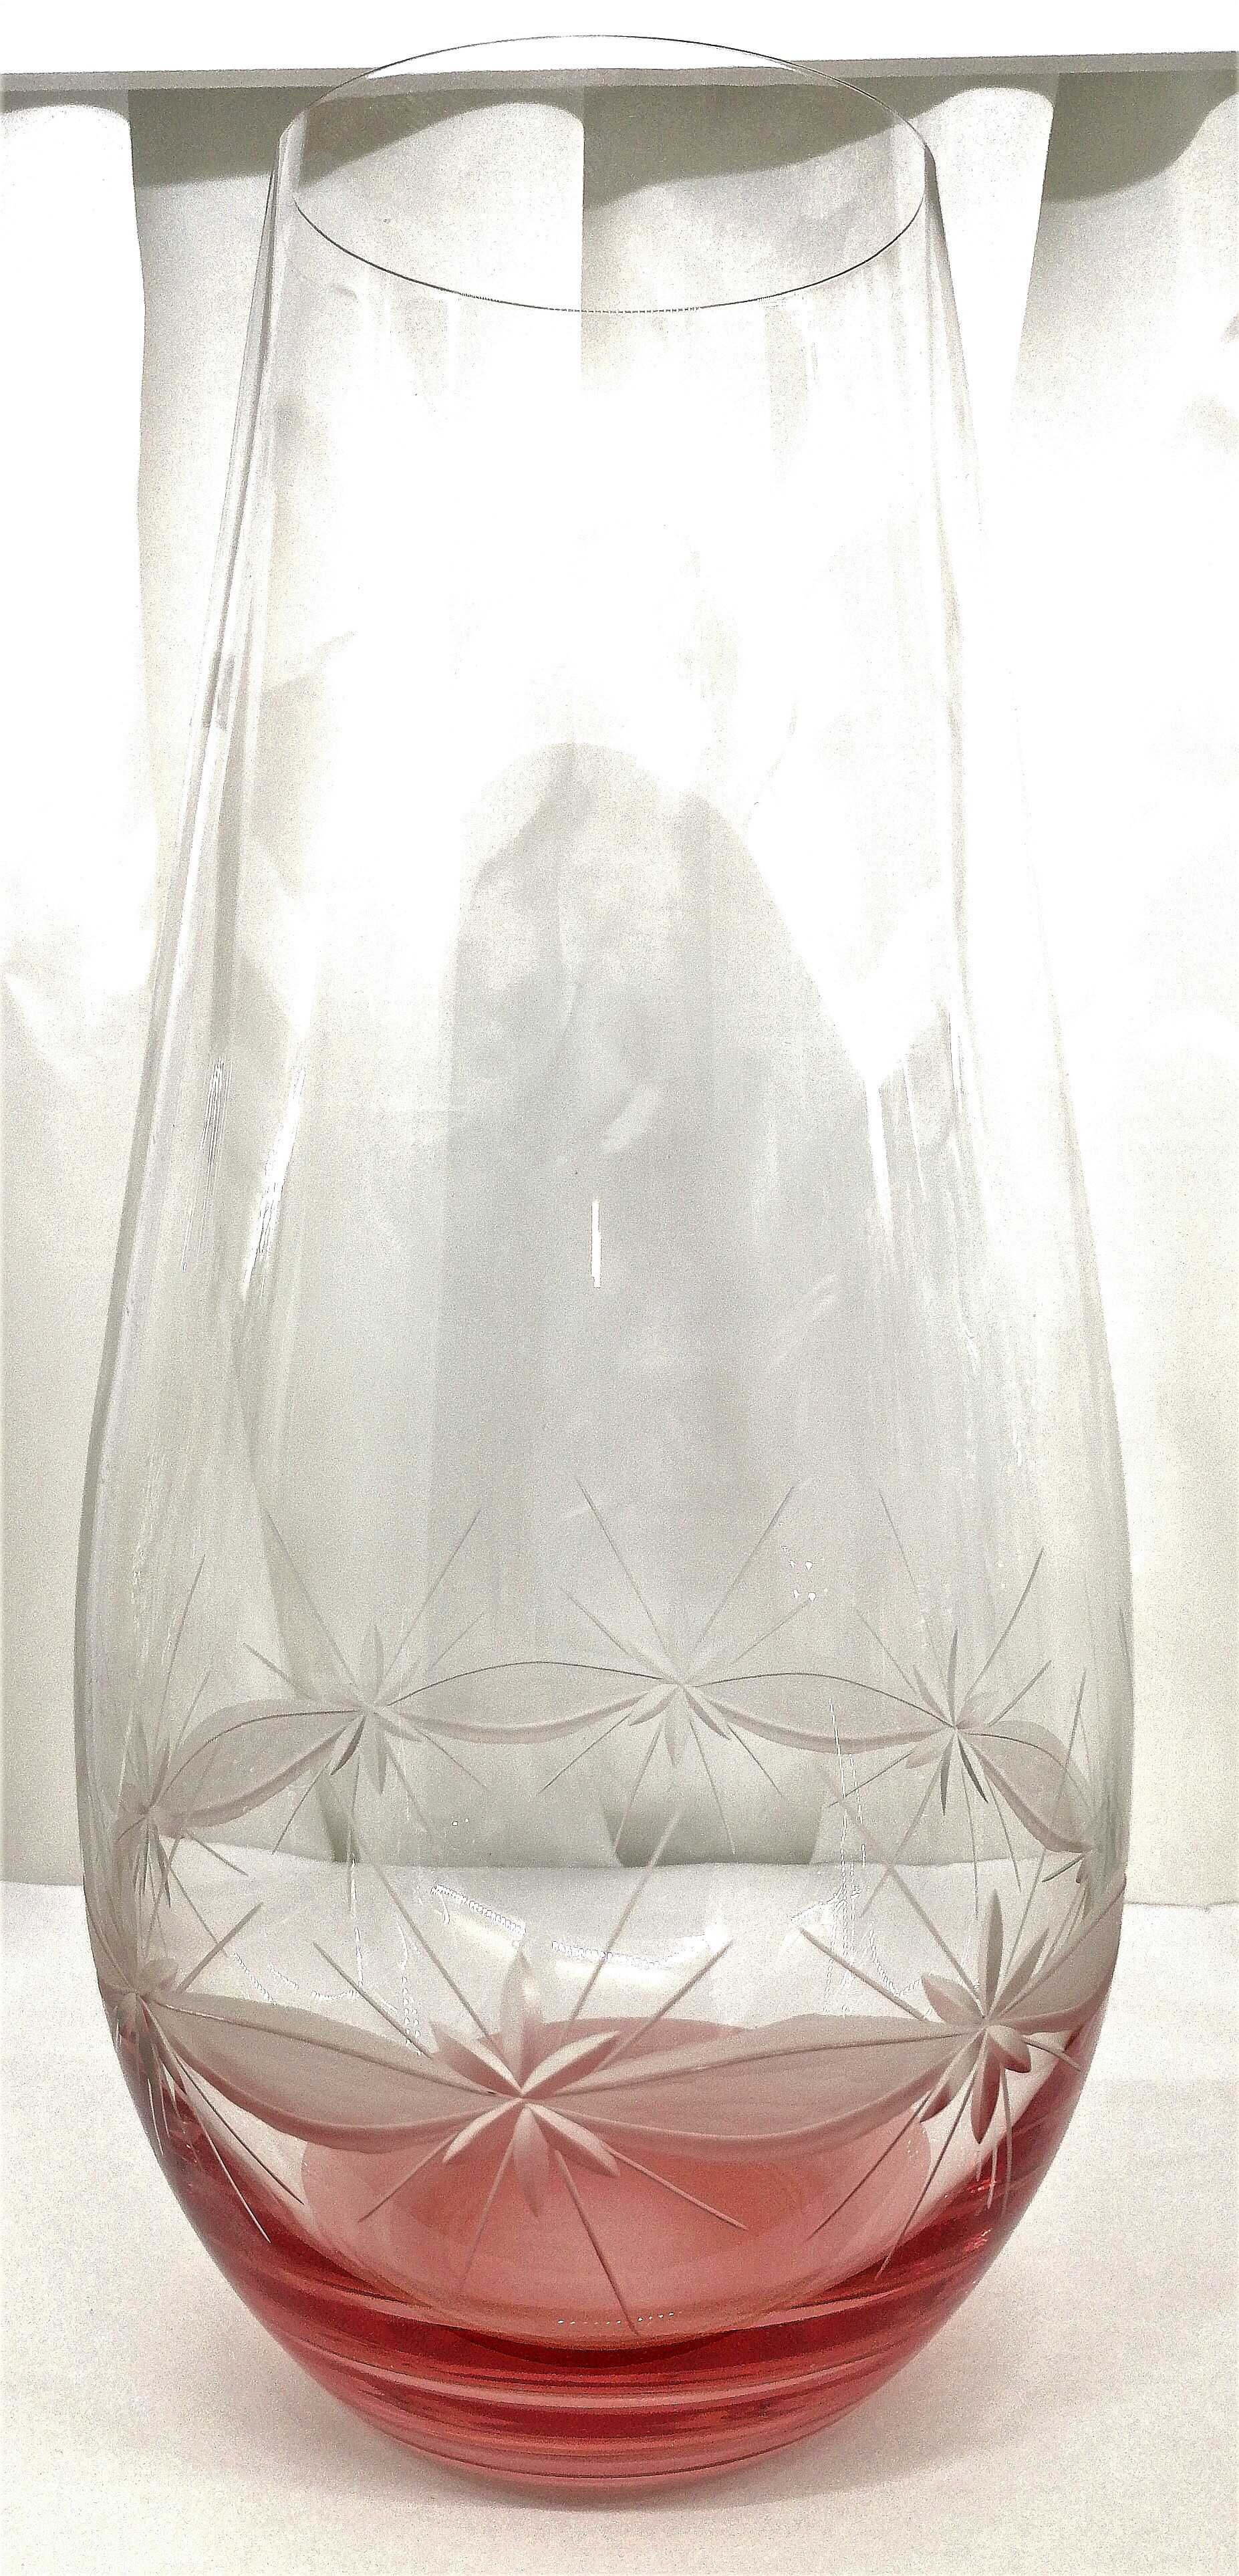 LsG-Crystal Váza skleněná broušená starorůžová dekor Kanta WA-953 300 x 150 mm 1 Ks.